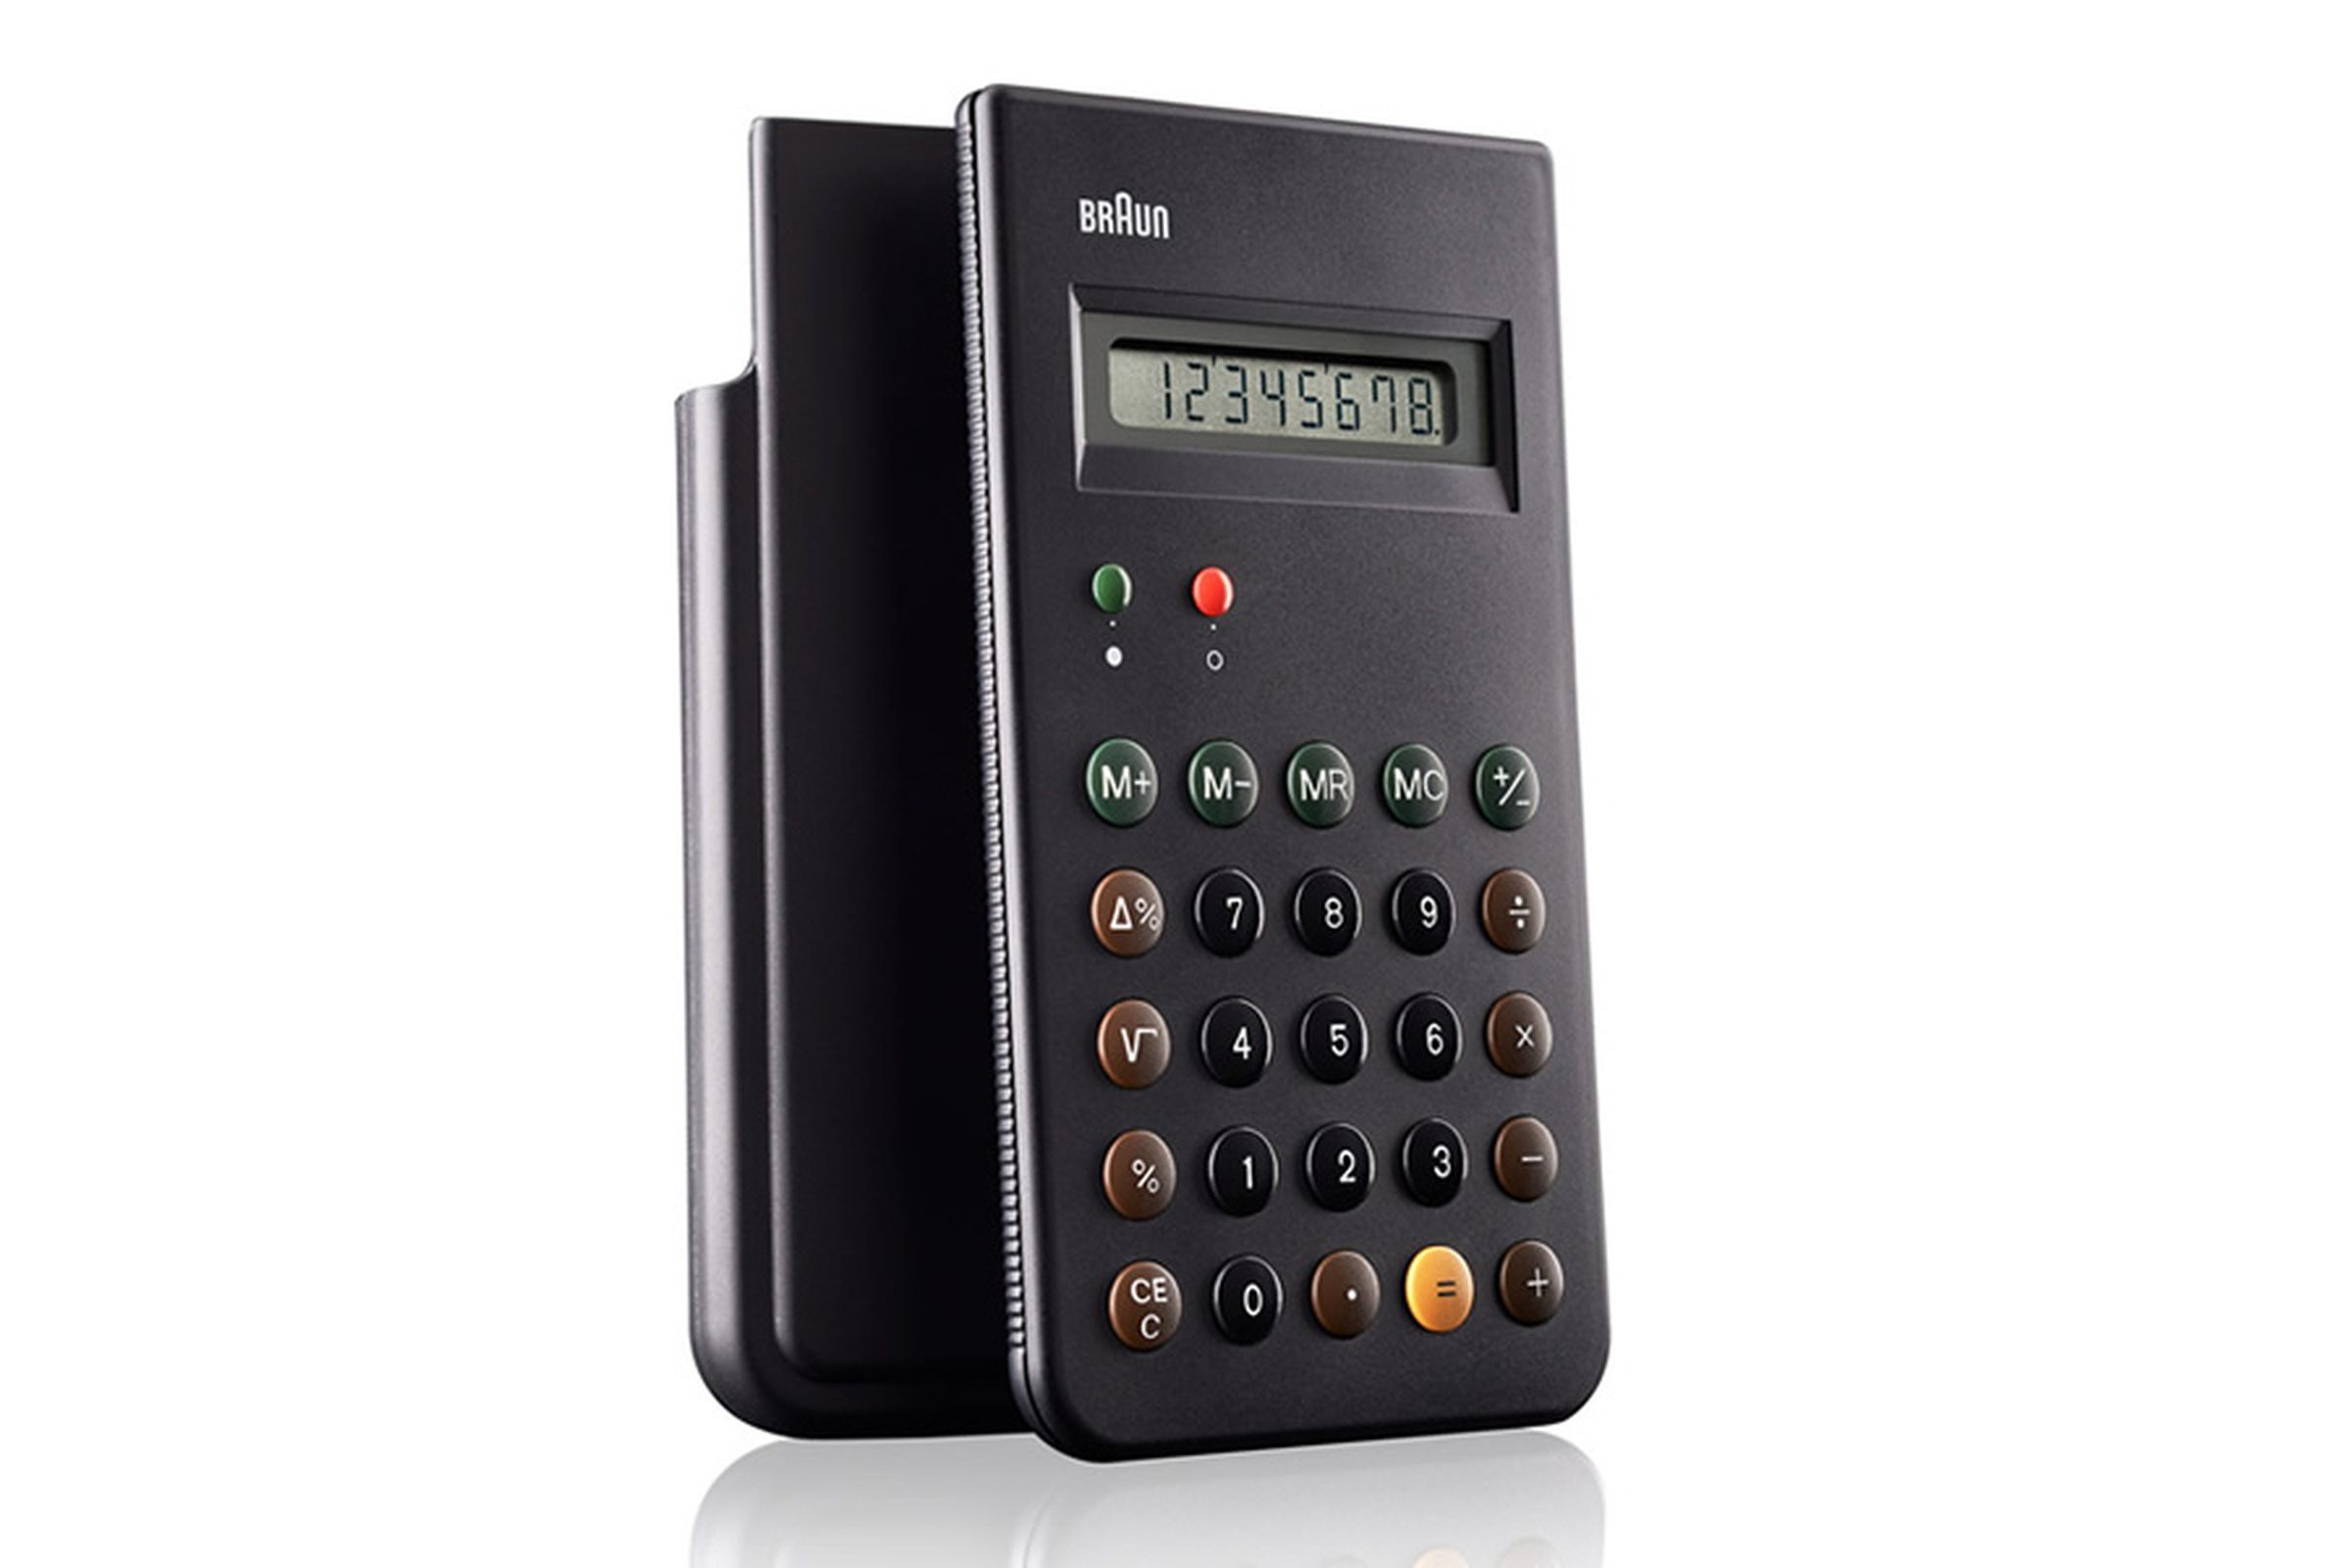 Braun ET66 calculator Dieter Rams